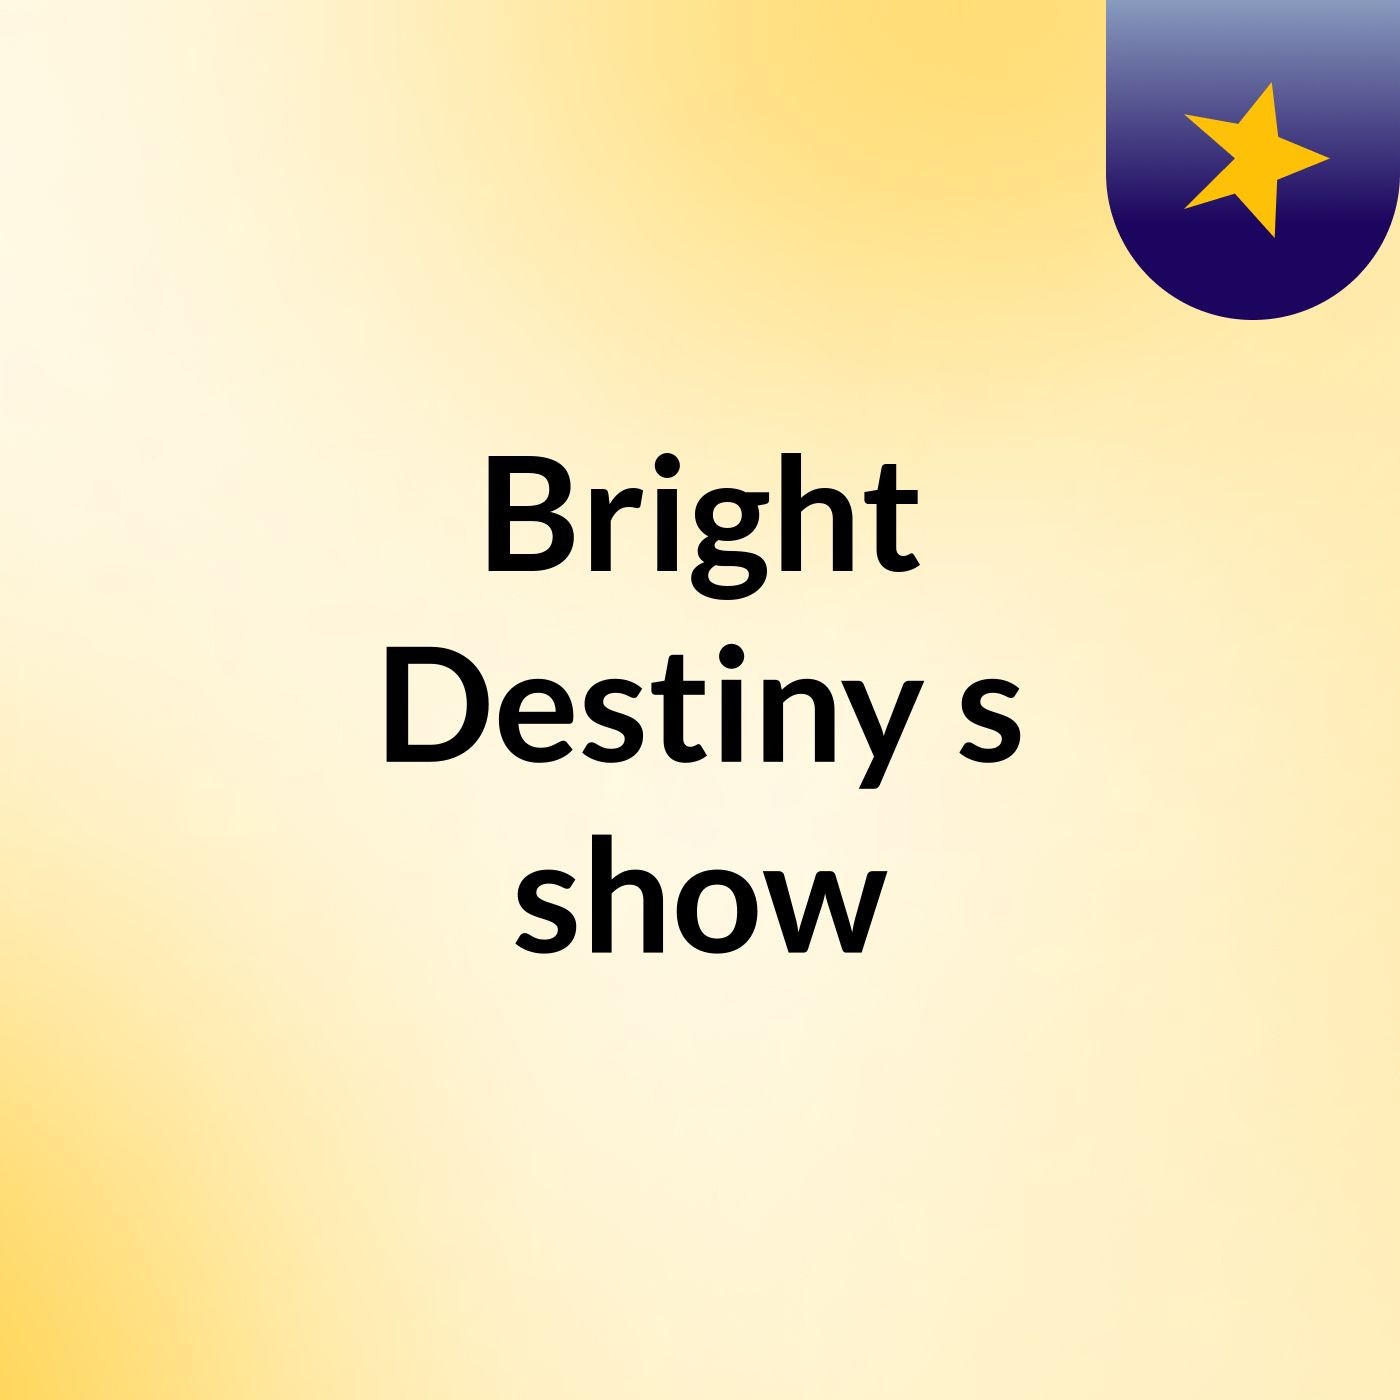 Bright Destiny's show